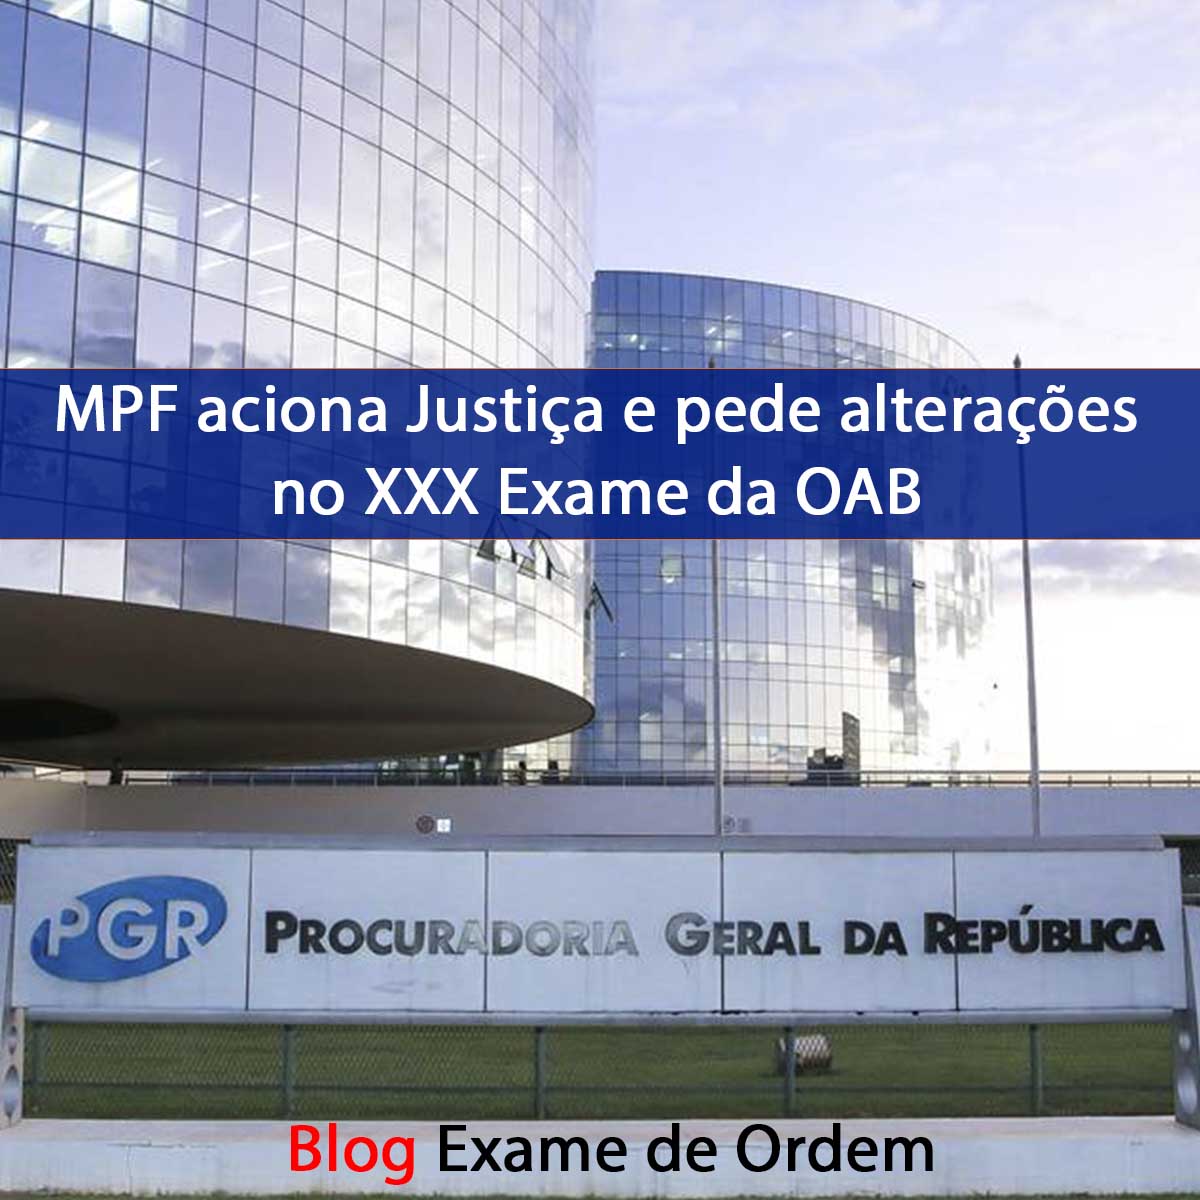 MPF aciona Justiça e pede alterações no XXX Exame da OAB